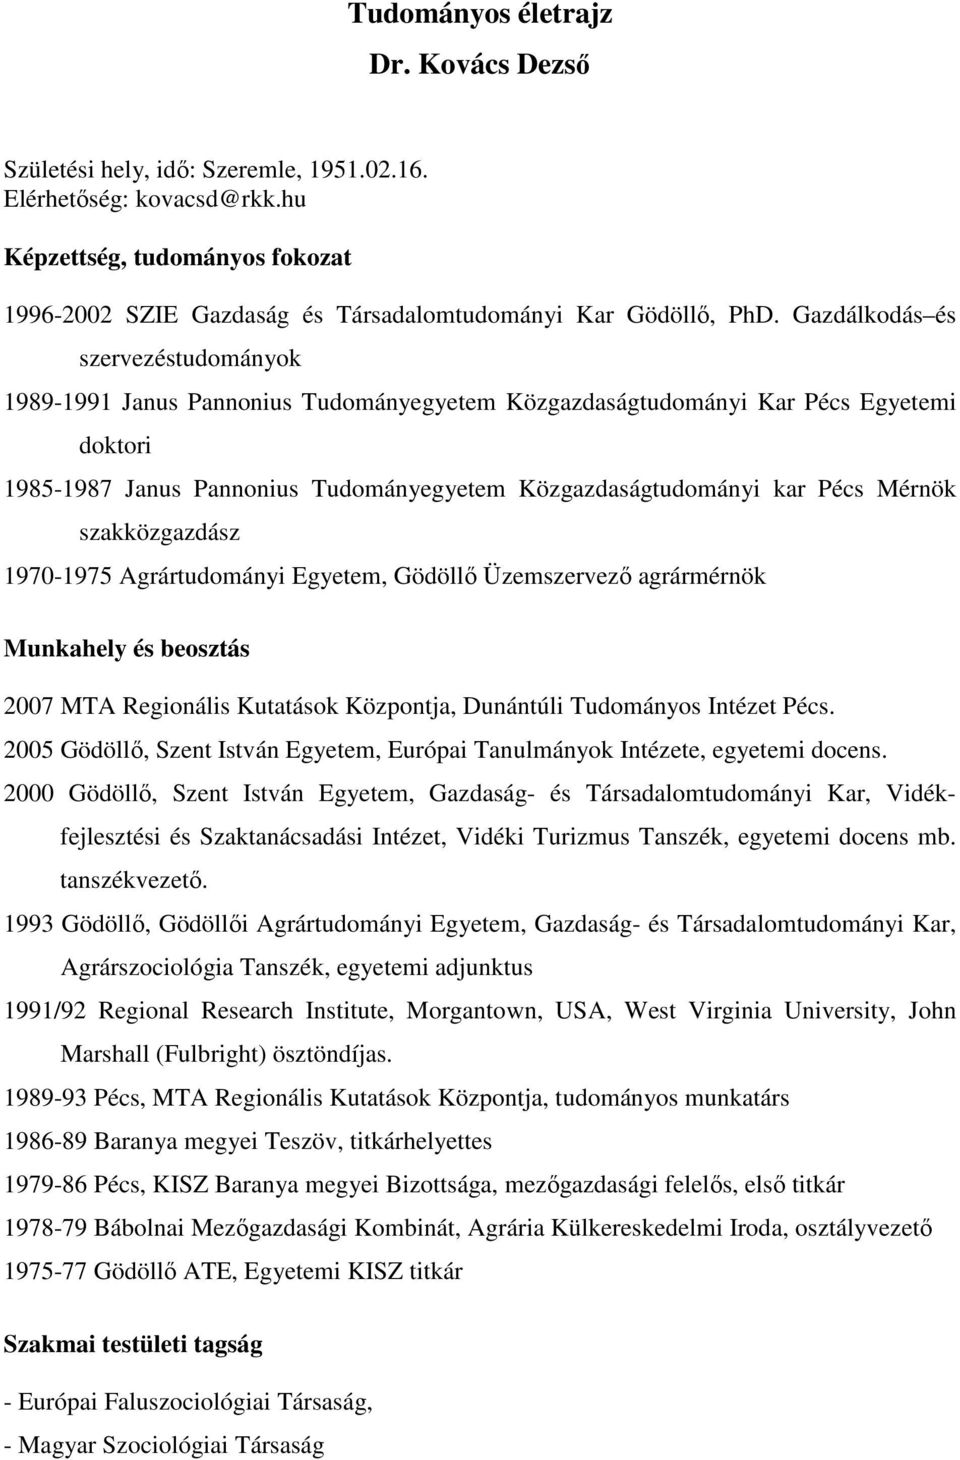 Tudományos életrajz Dr. Kovács Dezső - PDF Free Download